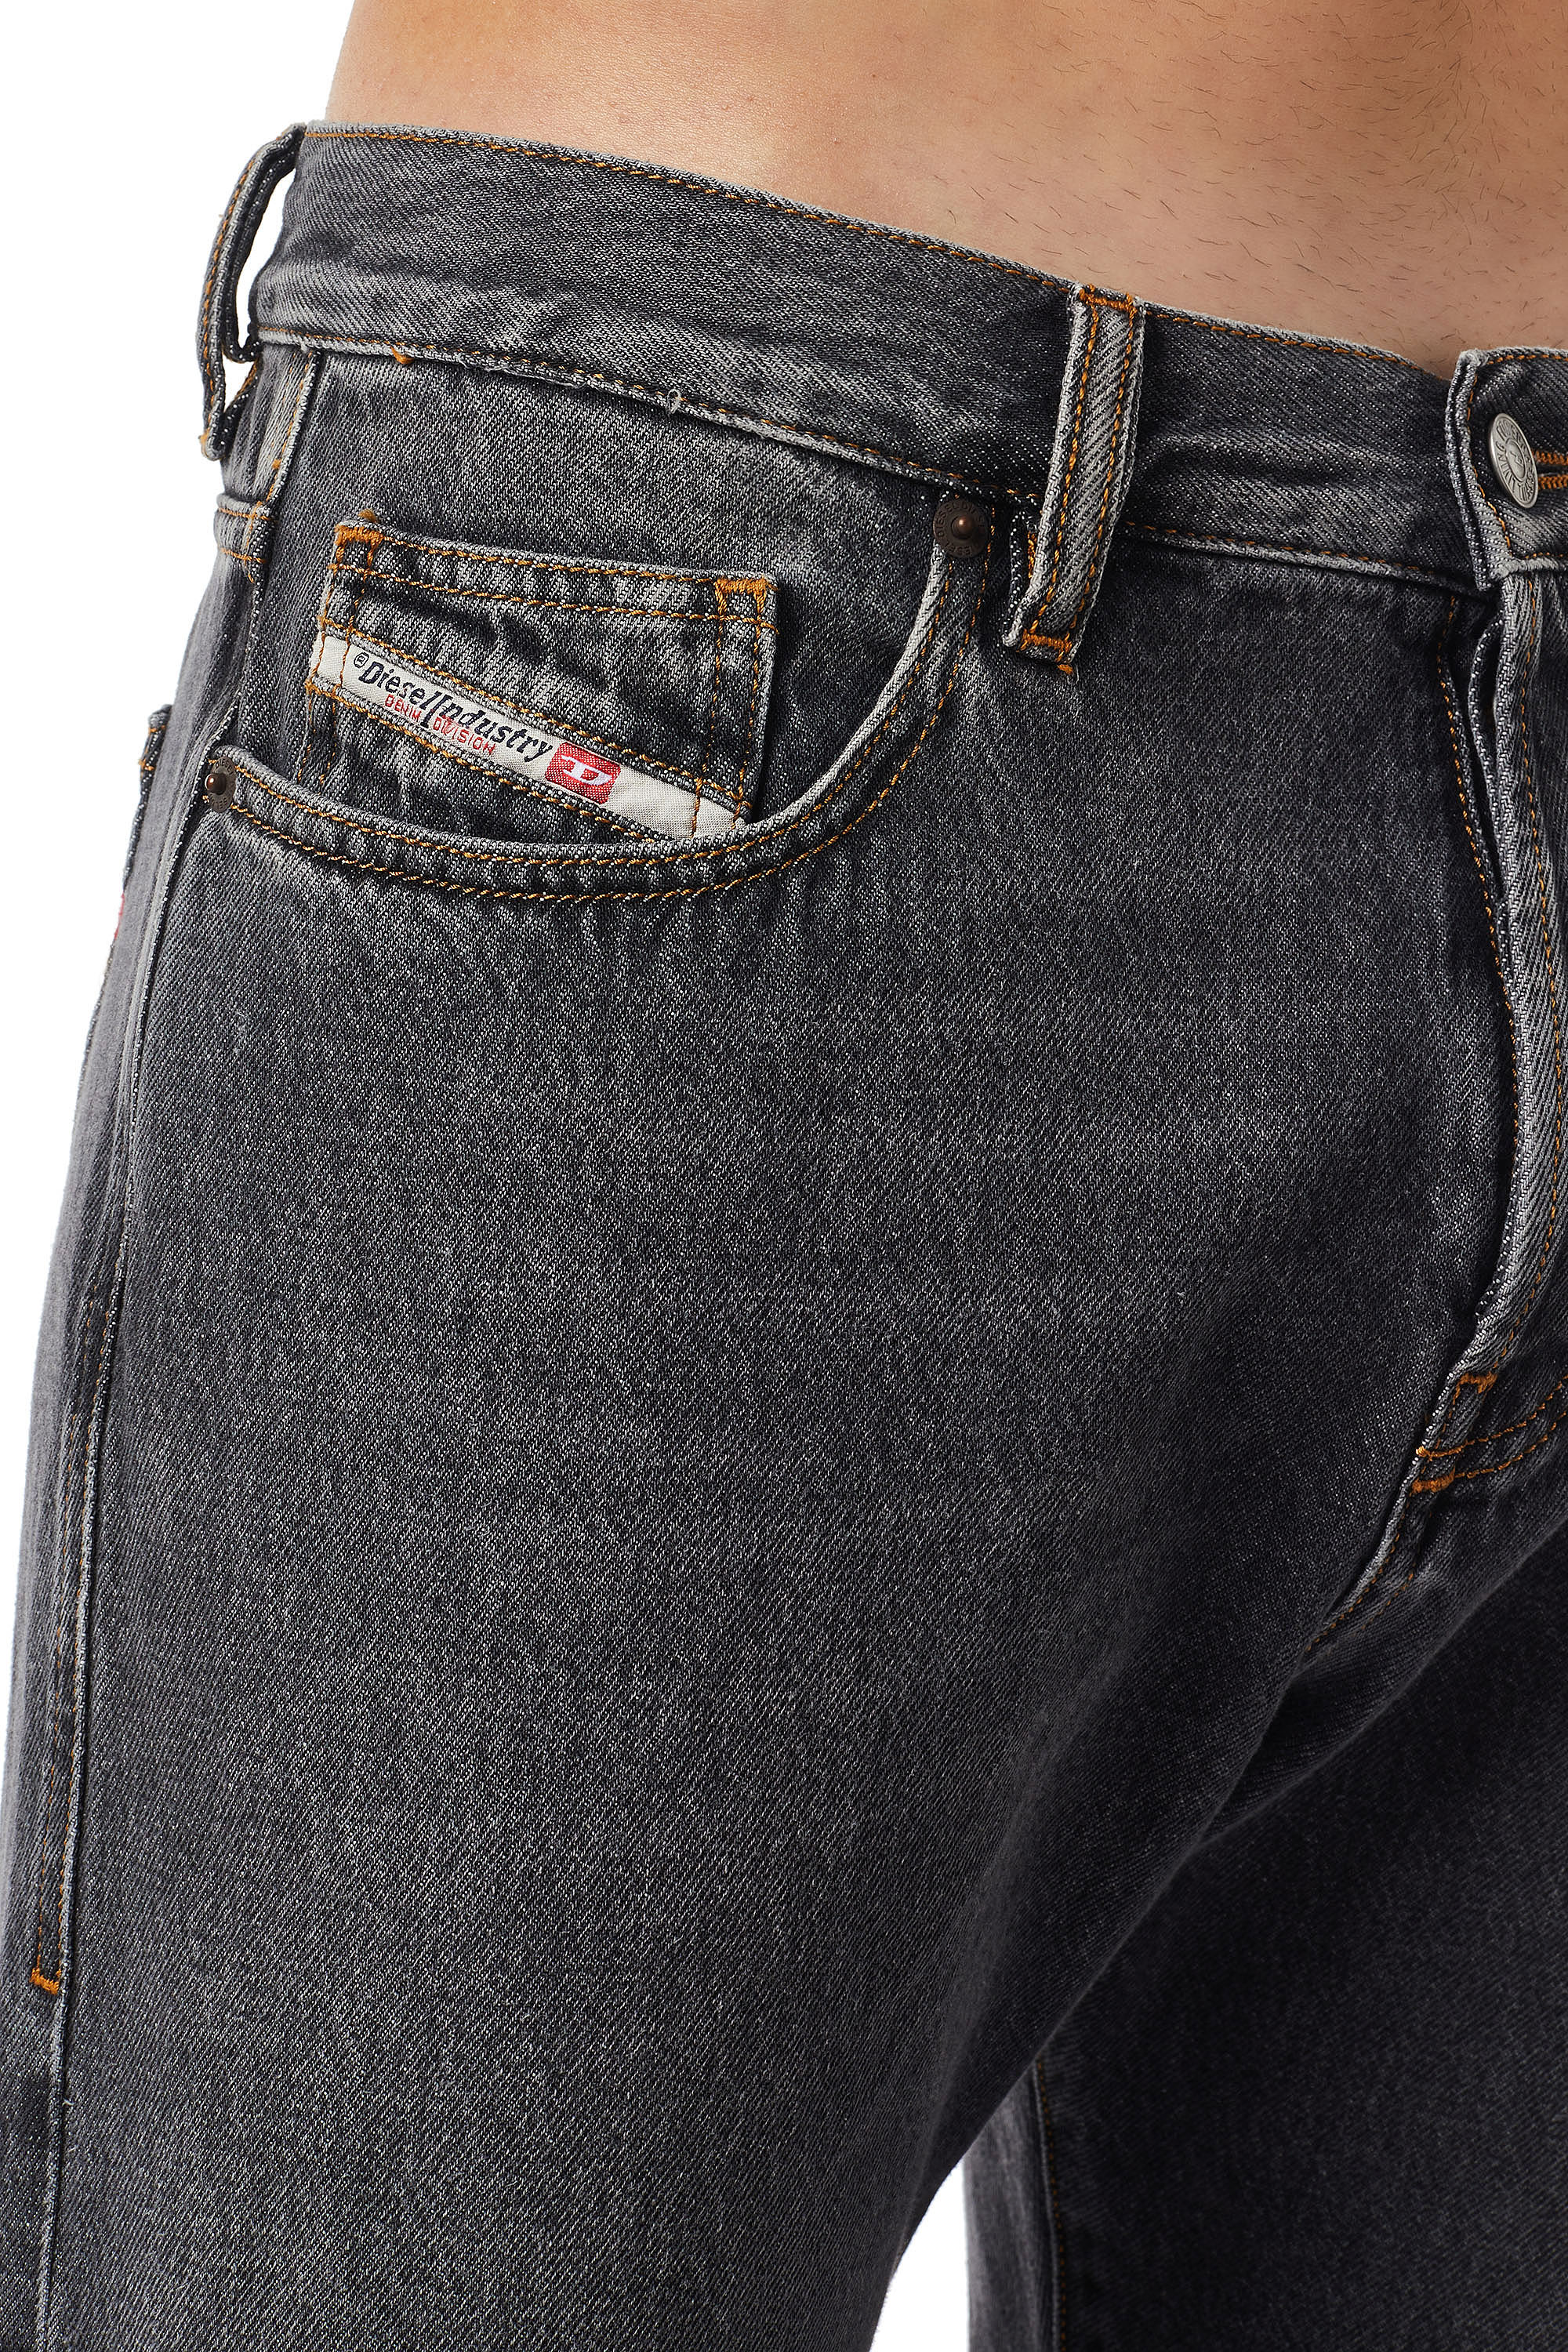 Mens Straight Jeans | Diesel Online Store